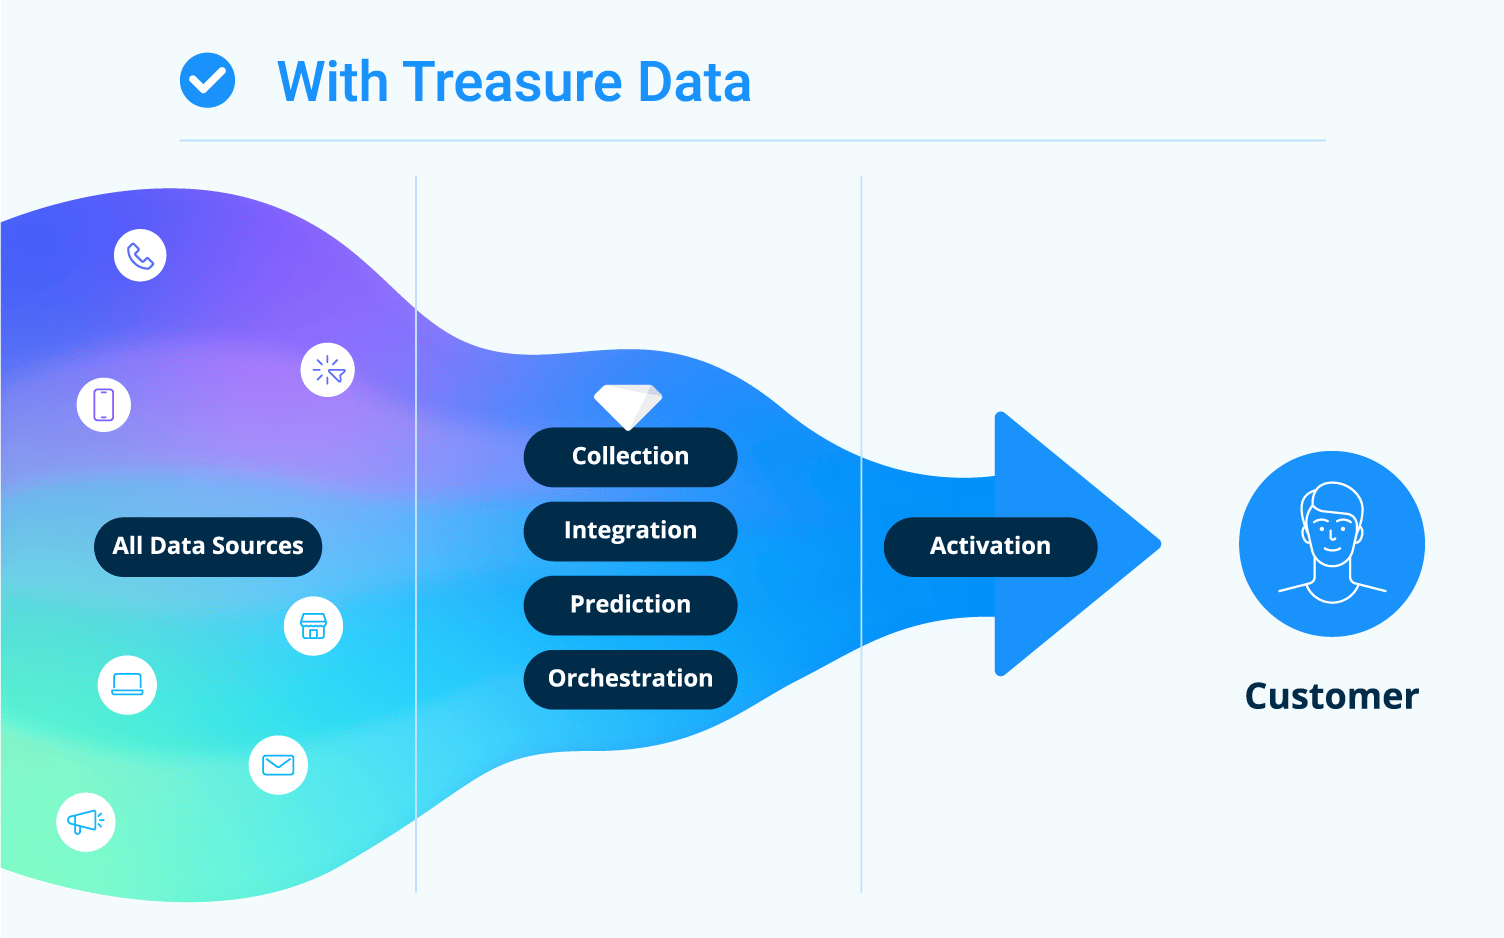 トレジャーデータのある企業は一元管理されたデータを元に一貫性のある顧客体験を提供できることを表した図